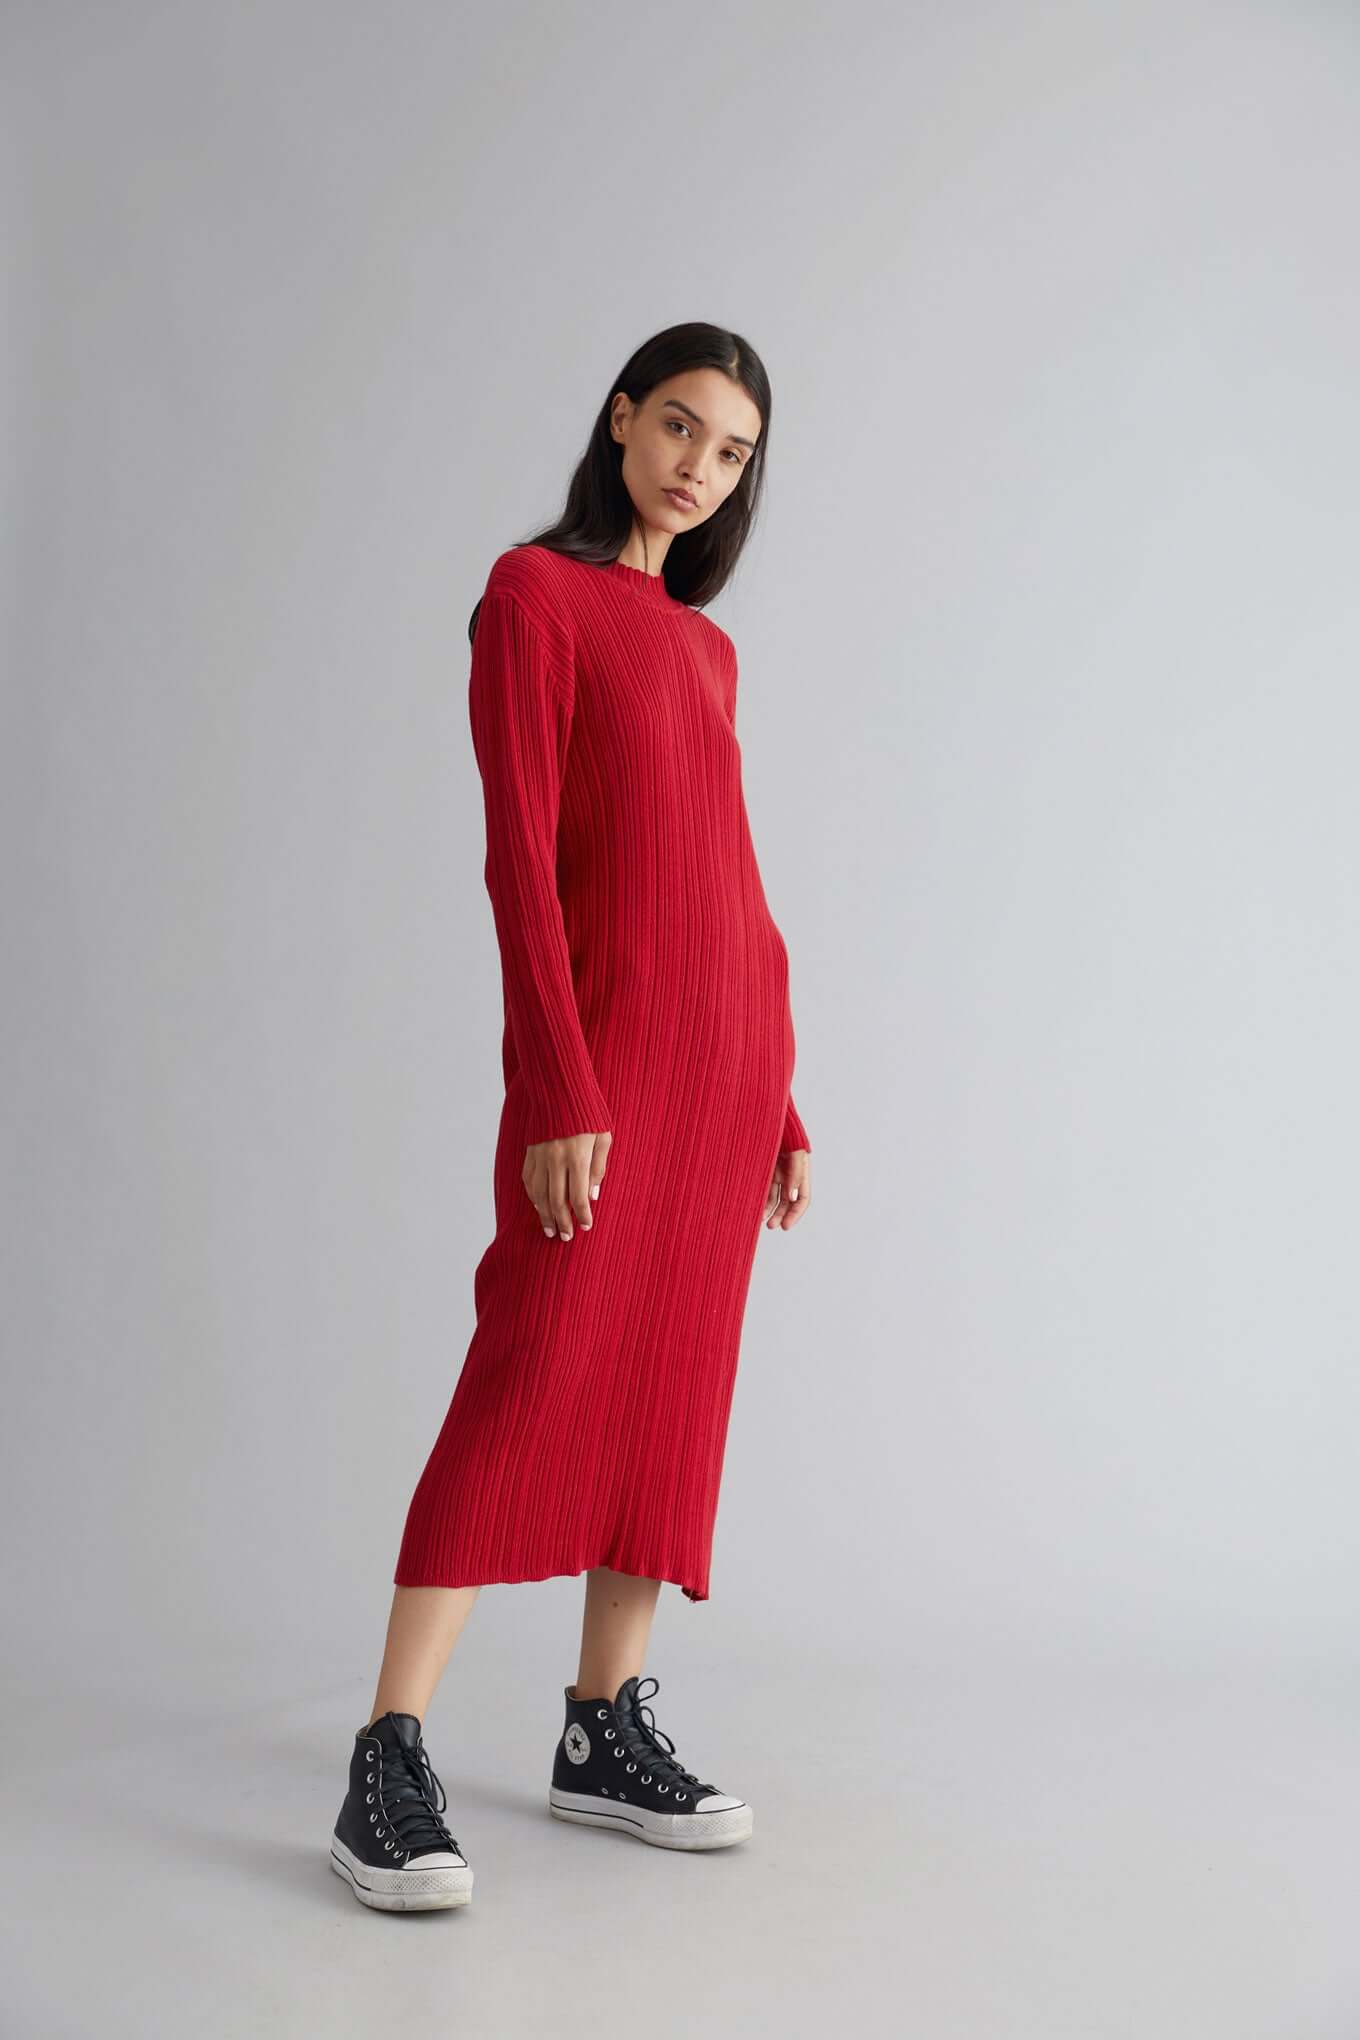 Rotes Kleid MAYUMI aus 100% Bio-Baumwolle von Komodo